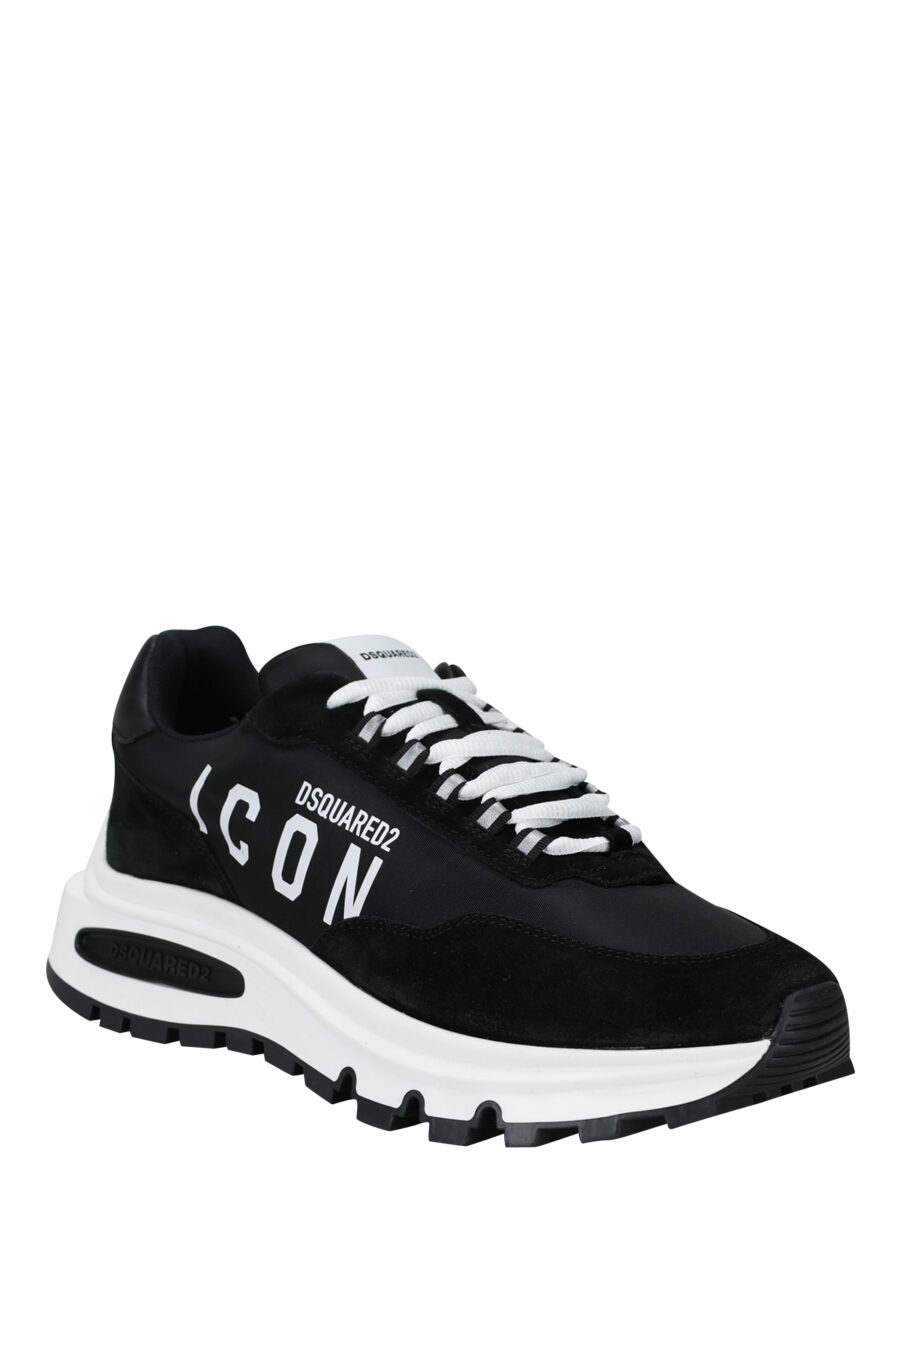 Chaussures noires avec mini-logo "icon" et semelle blanche avec chambre à air - 8055777249321 1